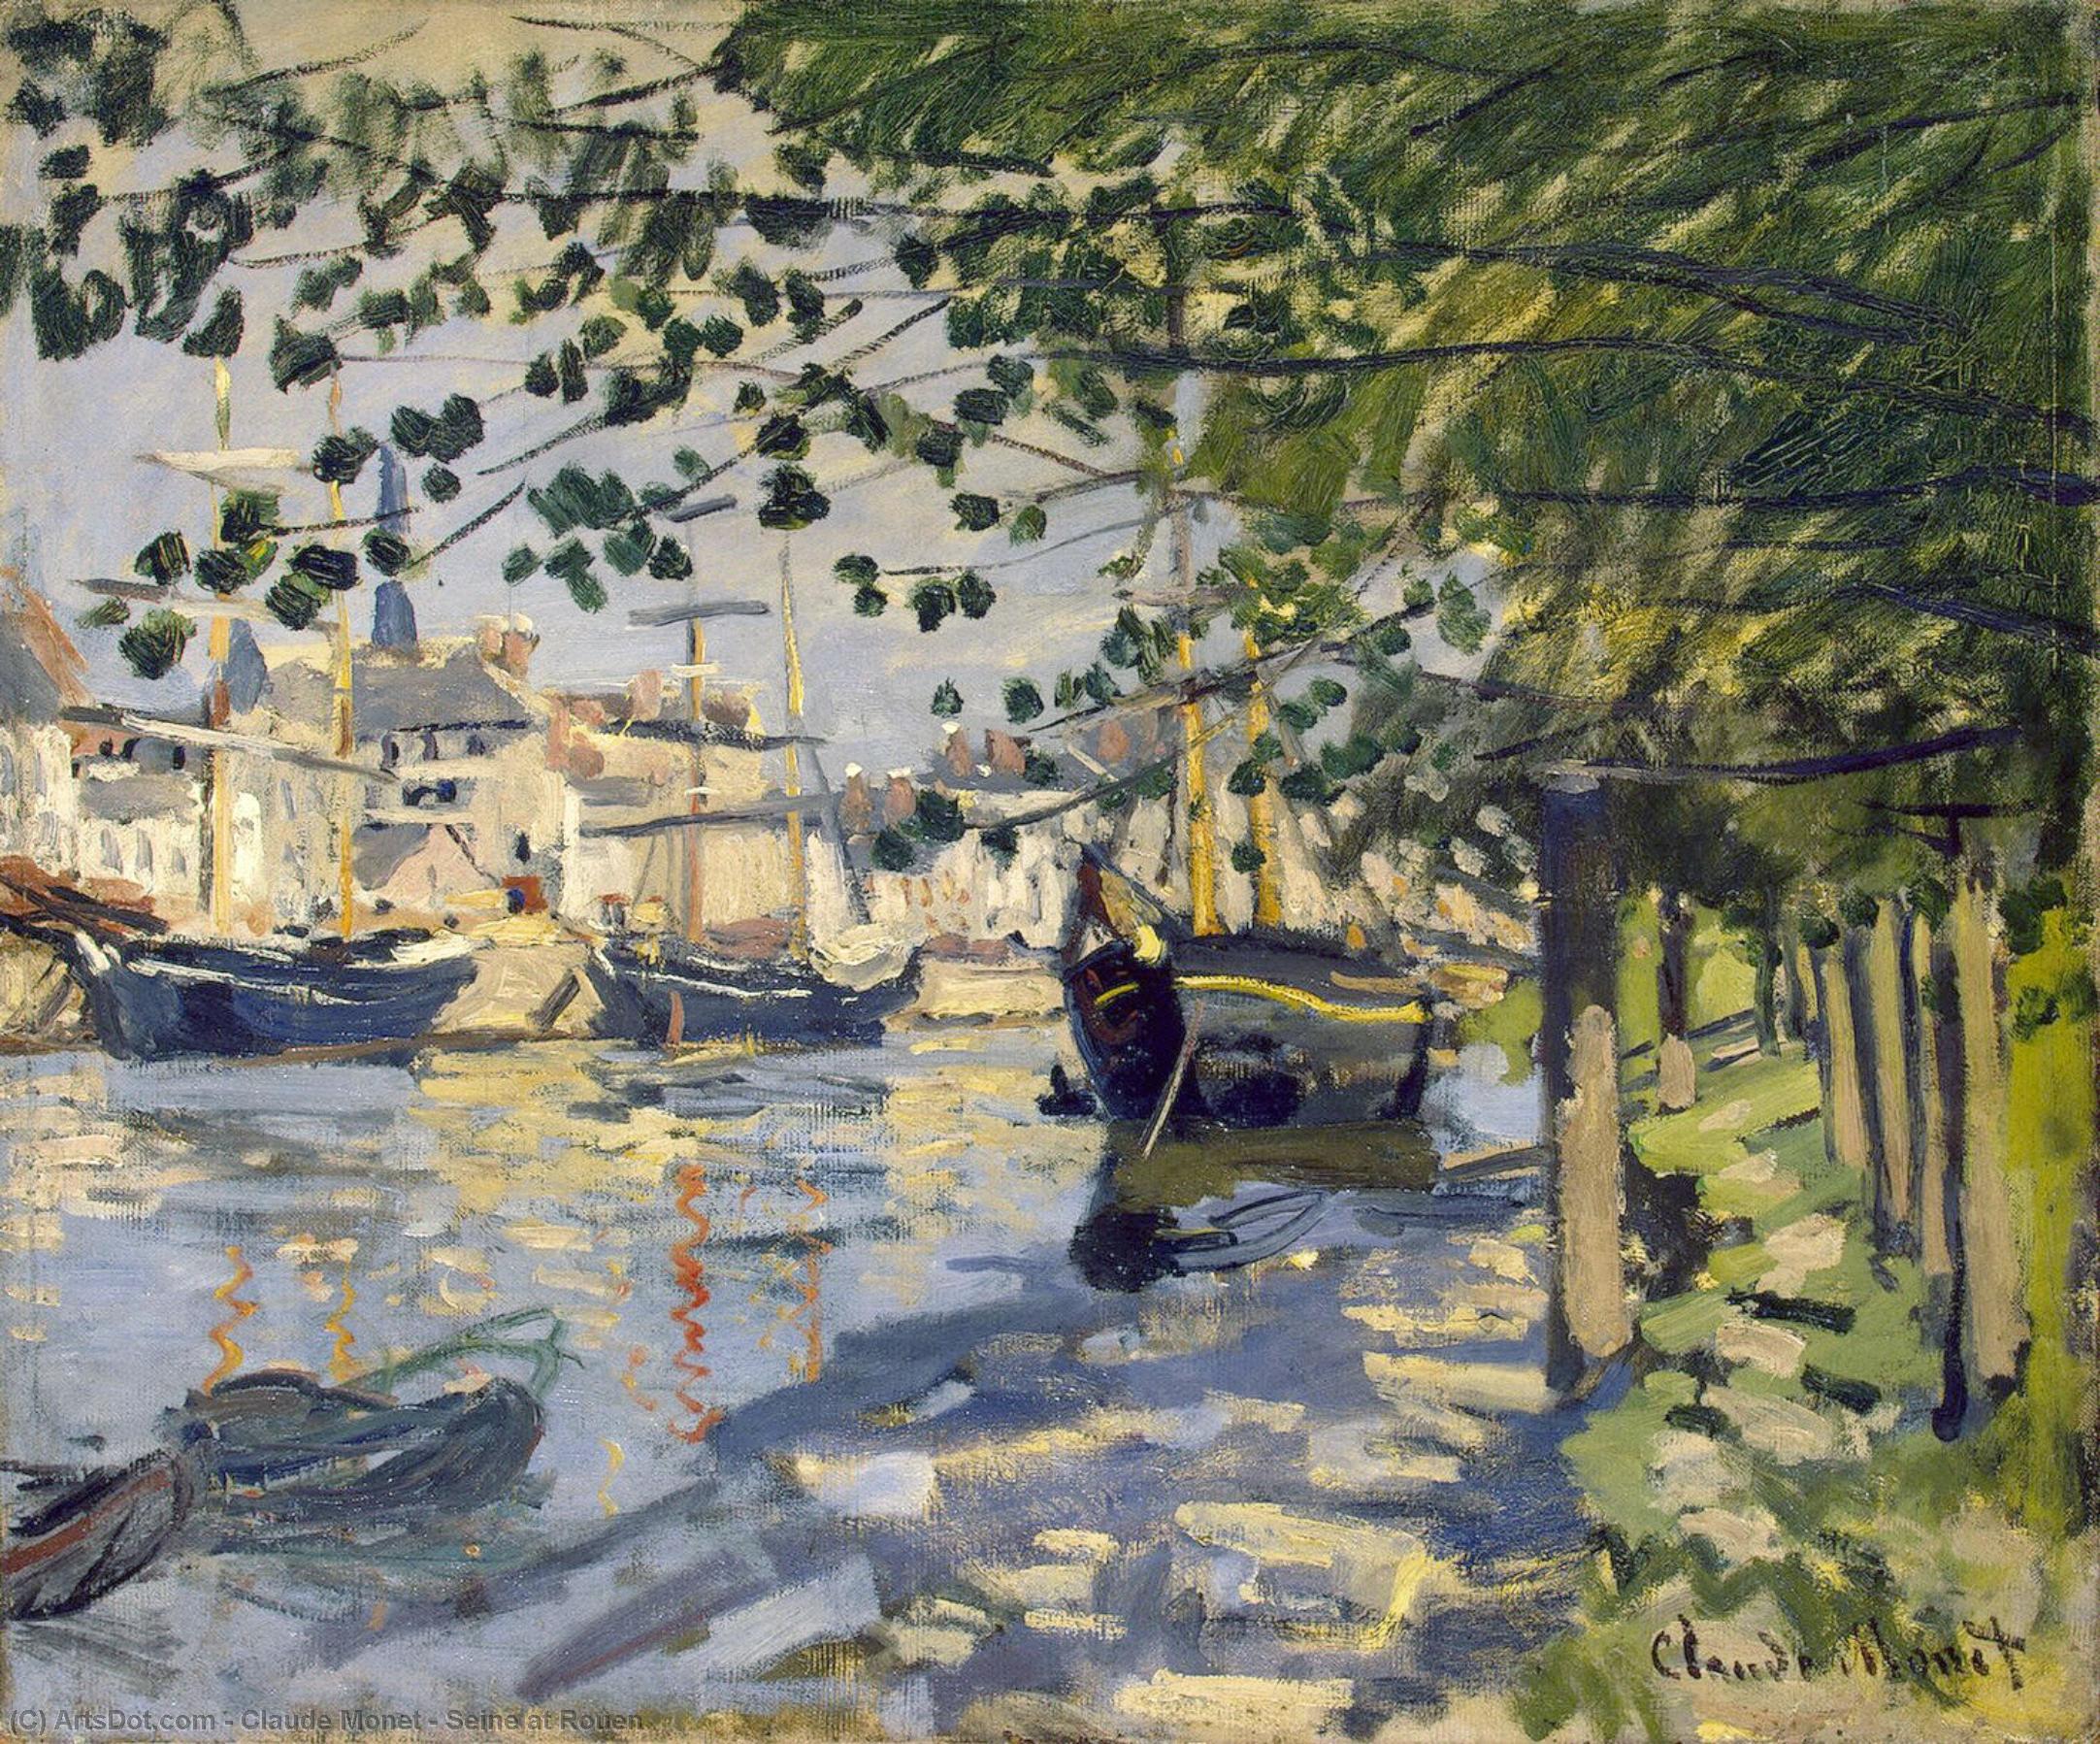 Wikioo.org - Die Enzyklopädie bildender Kunst - Malerei, Kunstwerk von Claude Monet - Seine bei Rouen